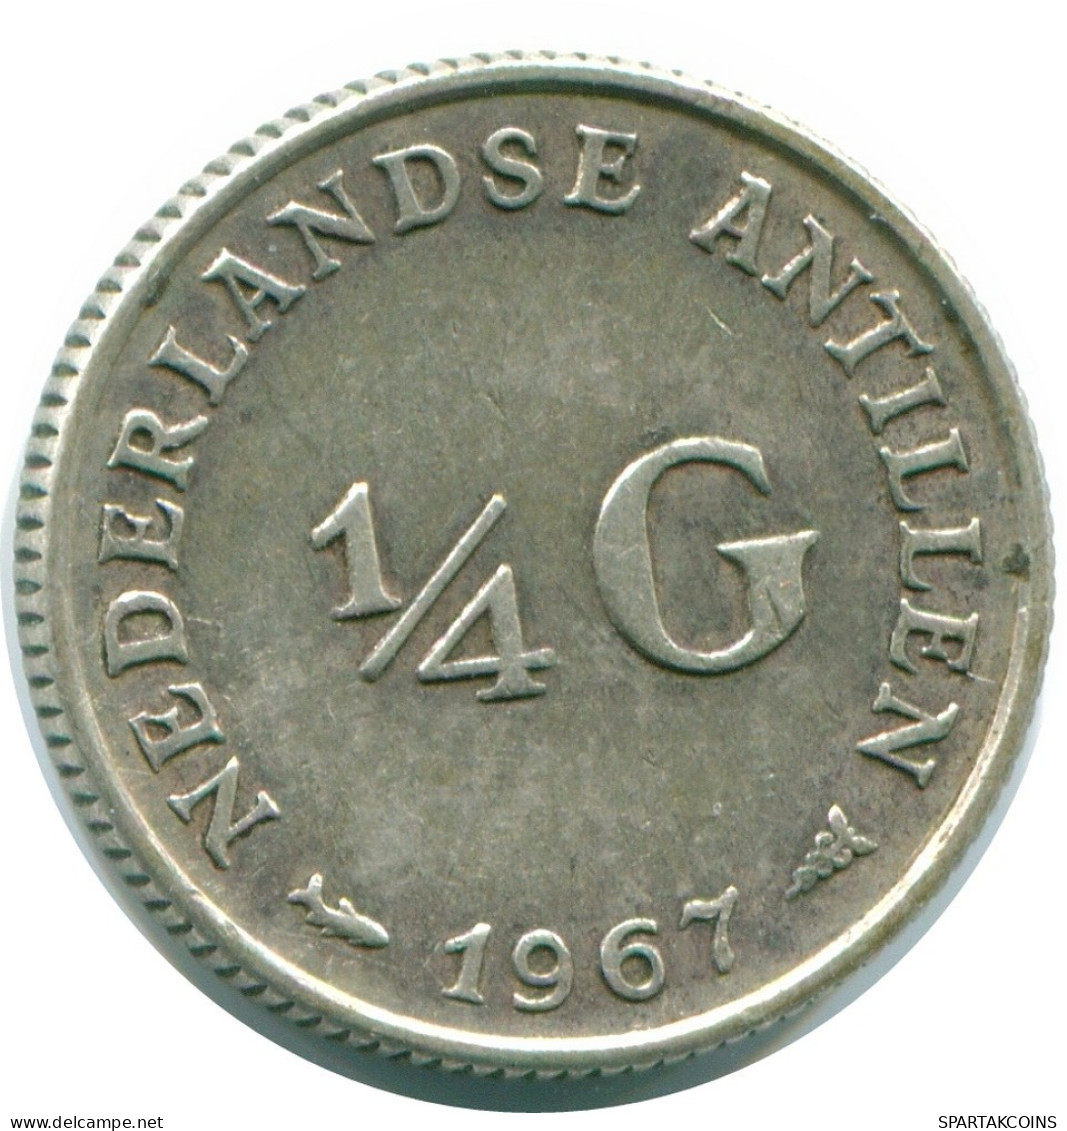 1/4 GULDEN 1967 NIEDERLÄNDISCHE ANTILLEN SILBER Koloniale Münze #NL11505.4.D.A - Antille Olandesi